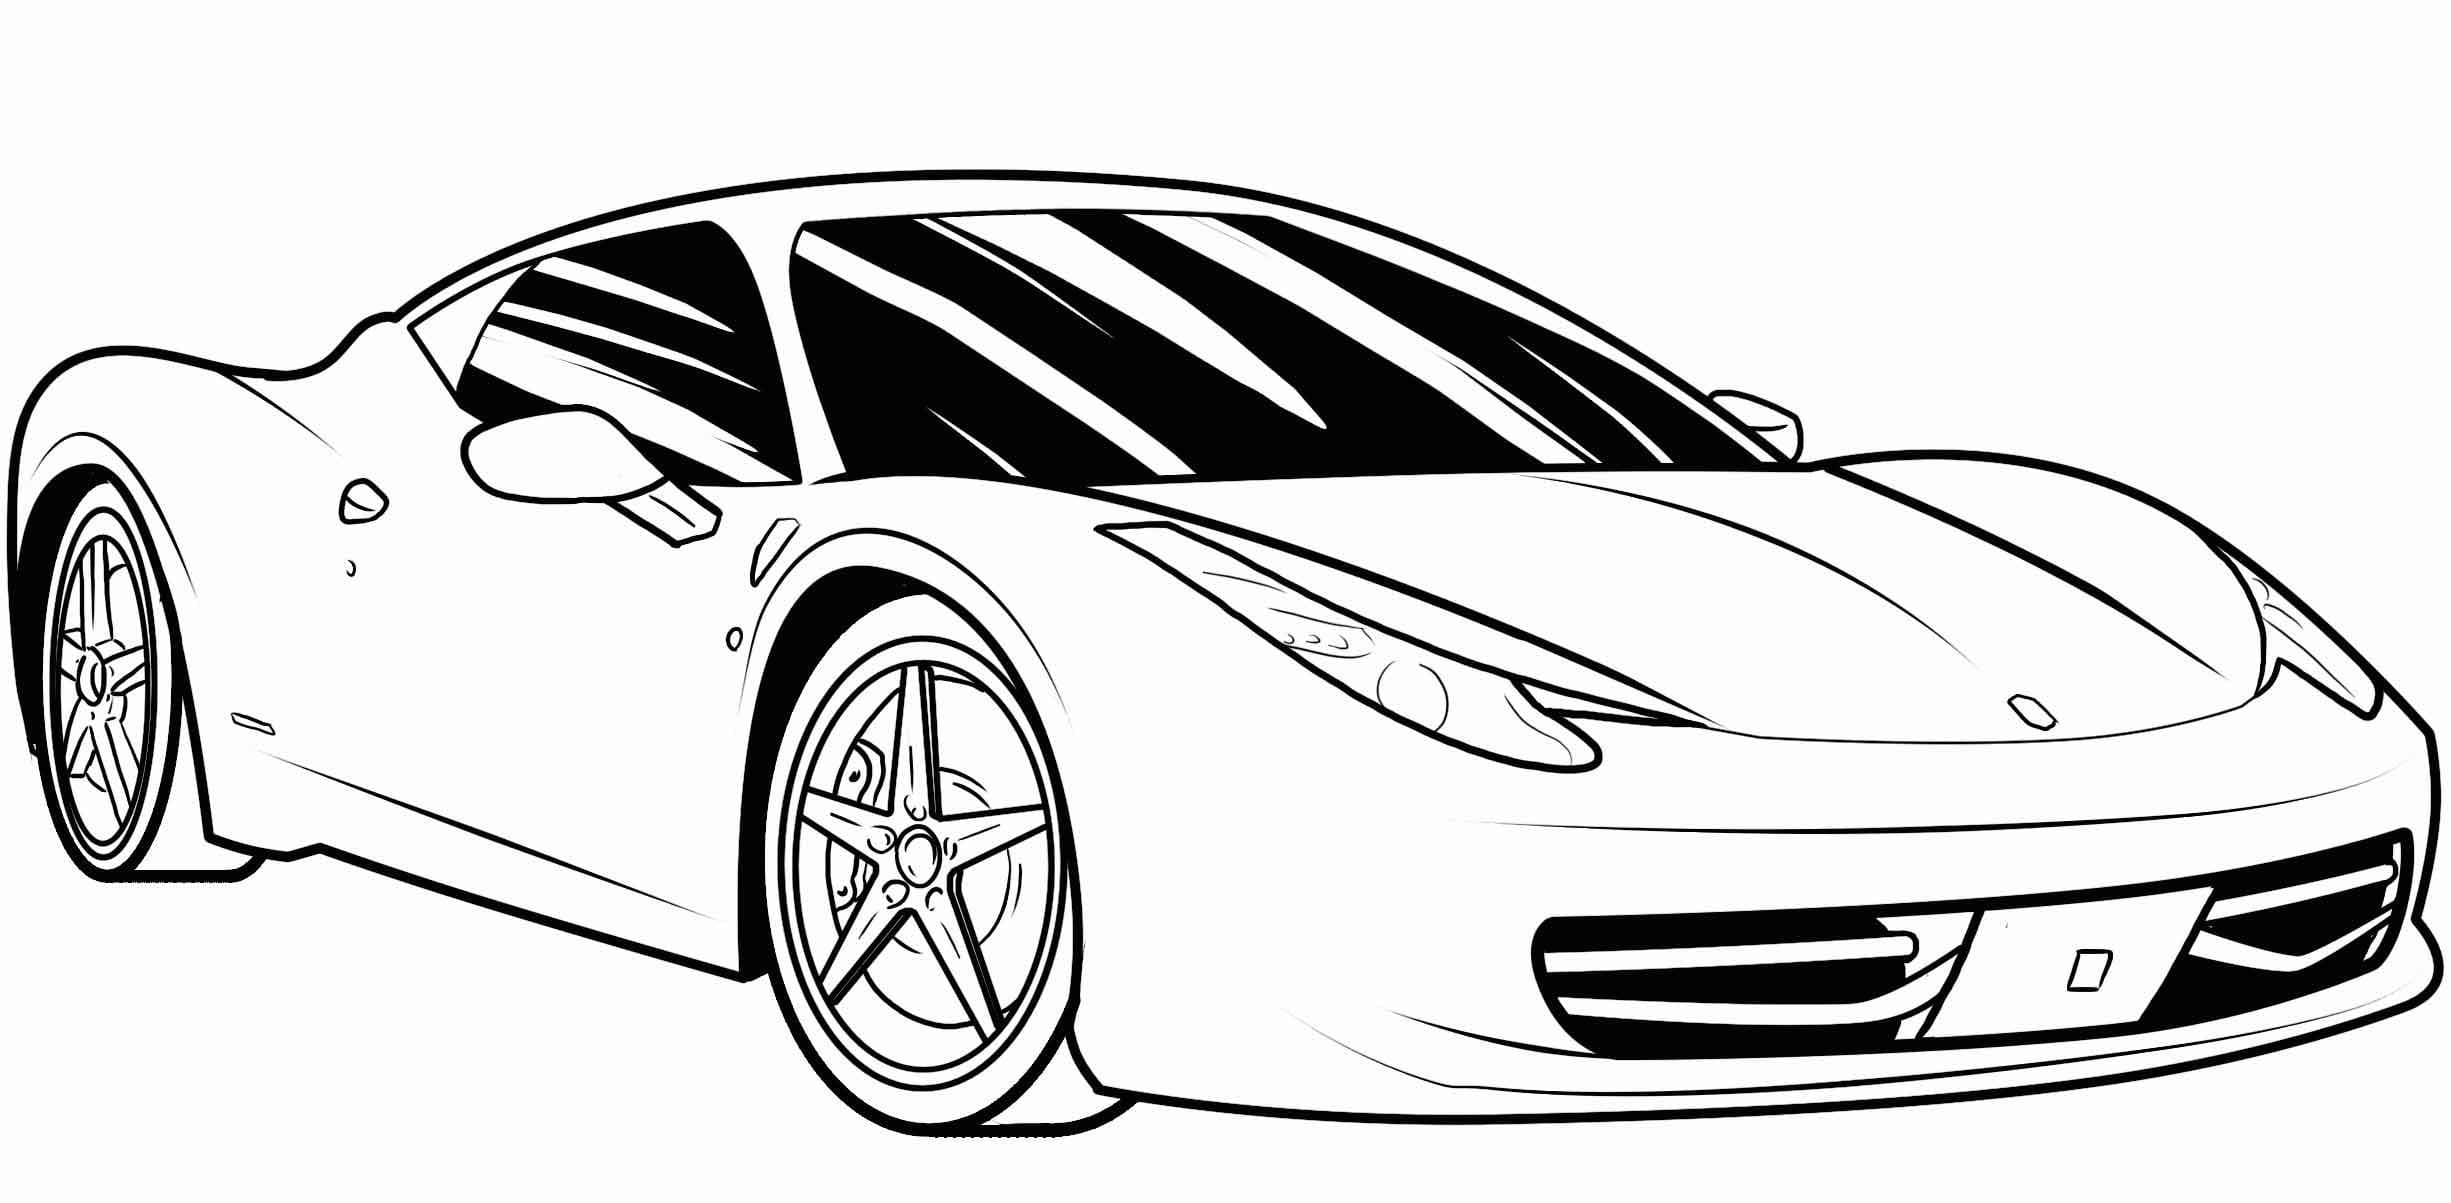 Desenhos De Carros Ferrari Para Pintar - zepada